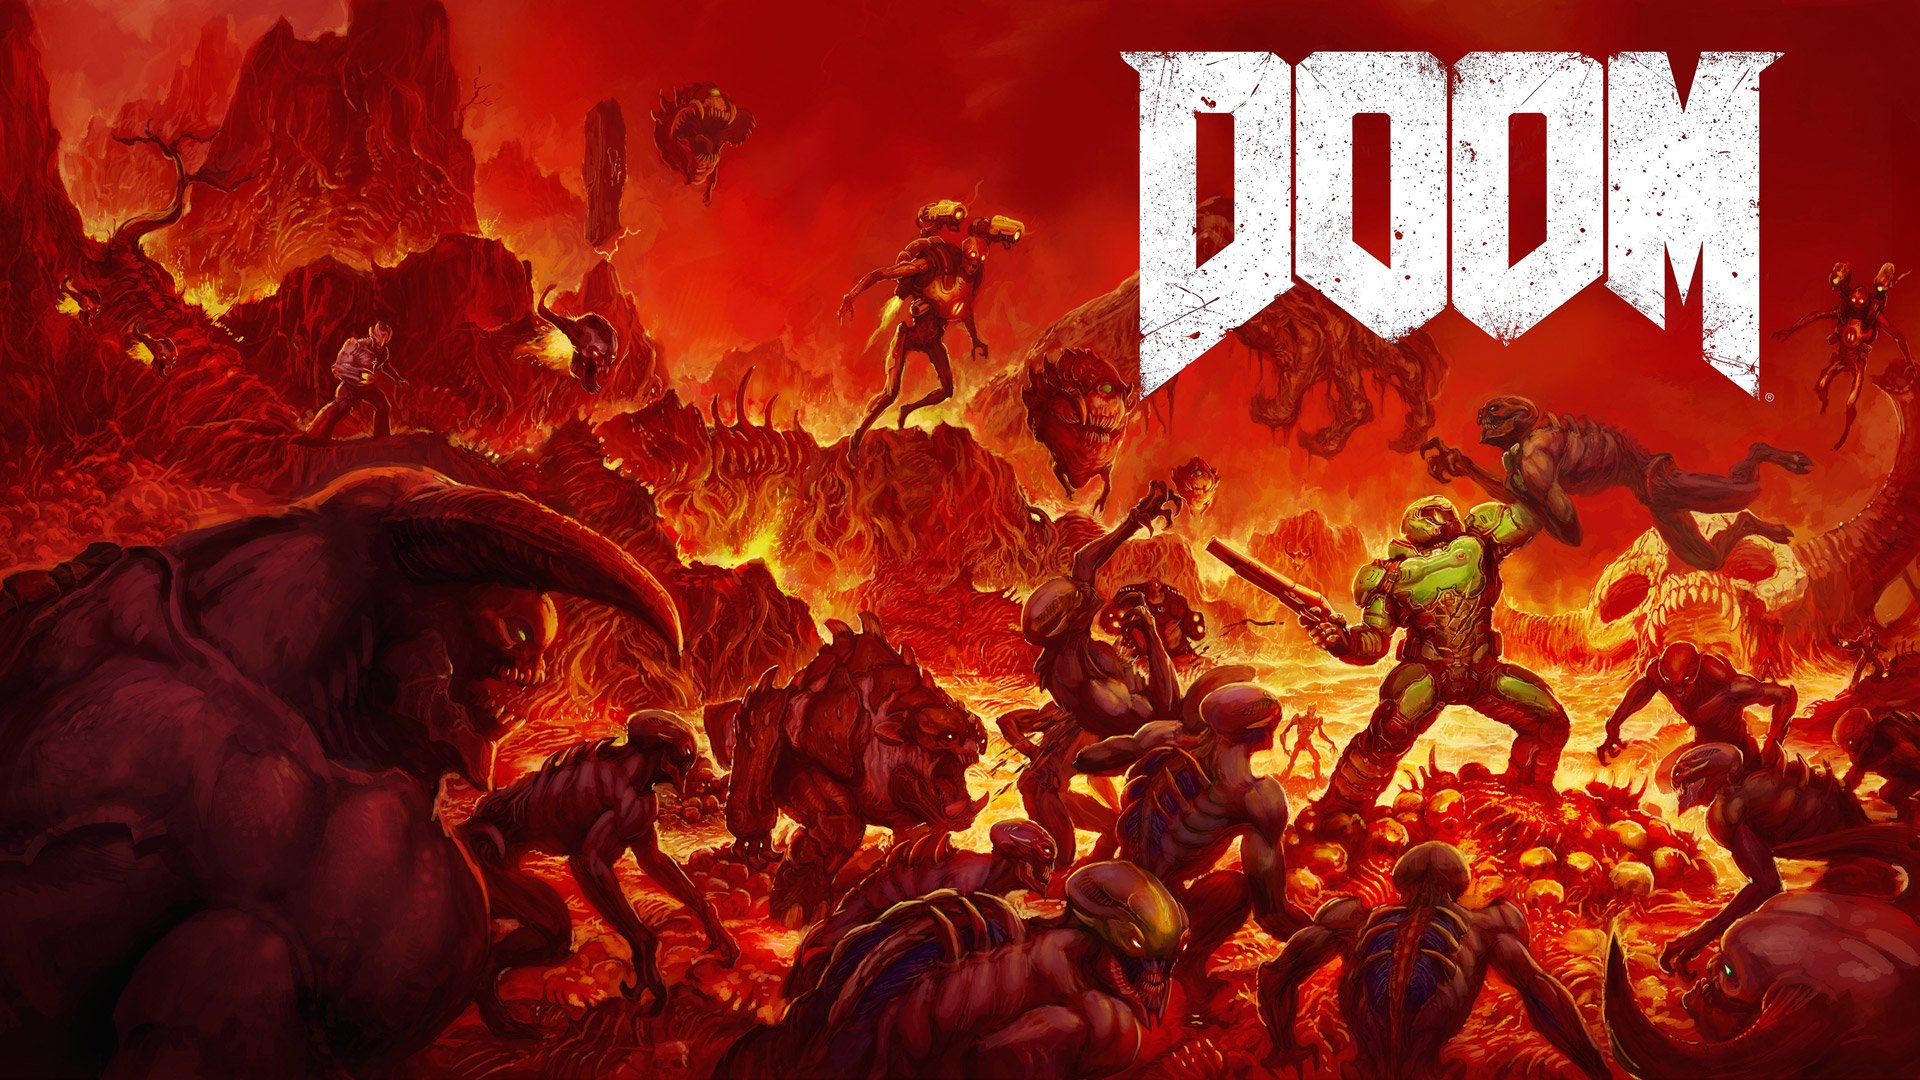  Doom 2016 Wallpaper in 1920x1080 1920x1080